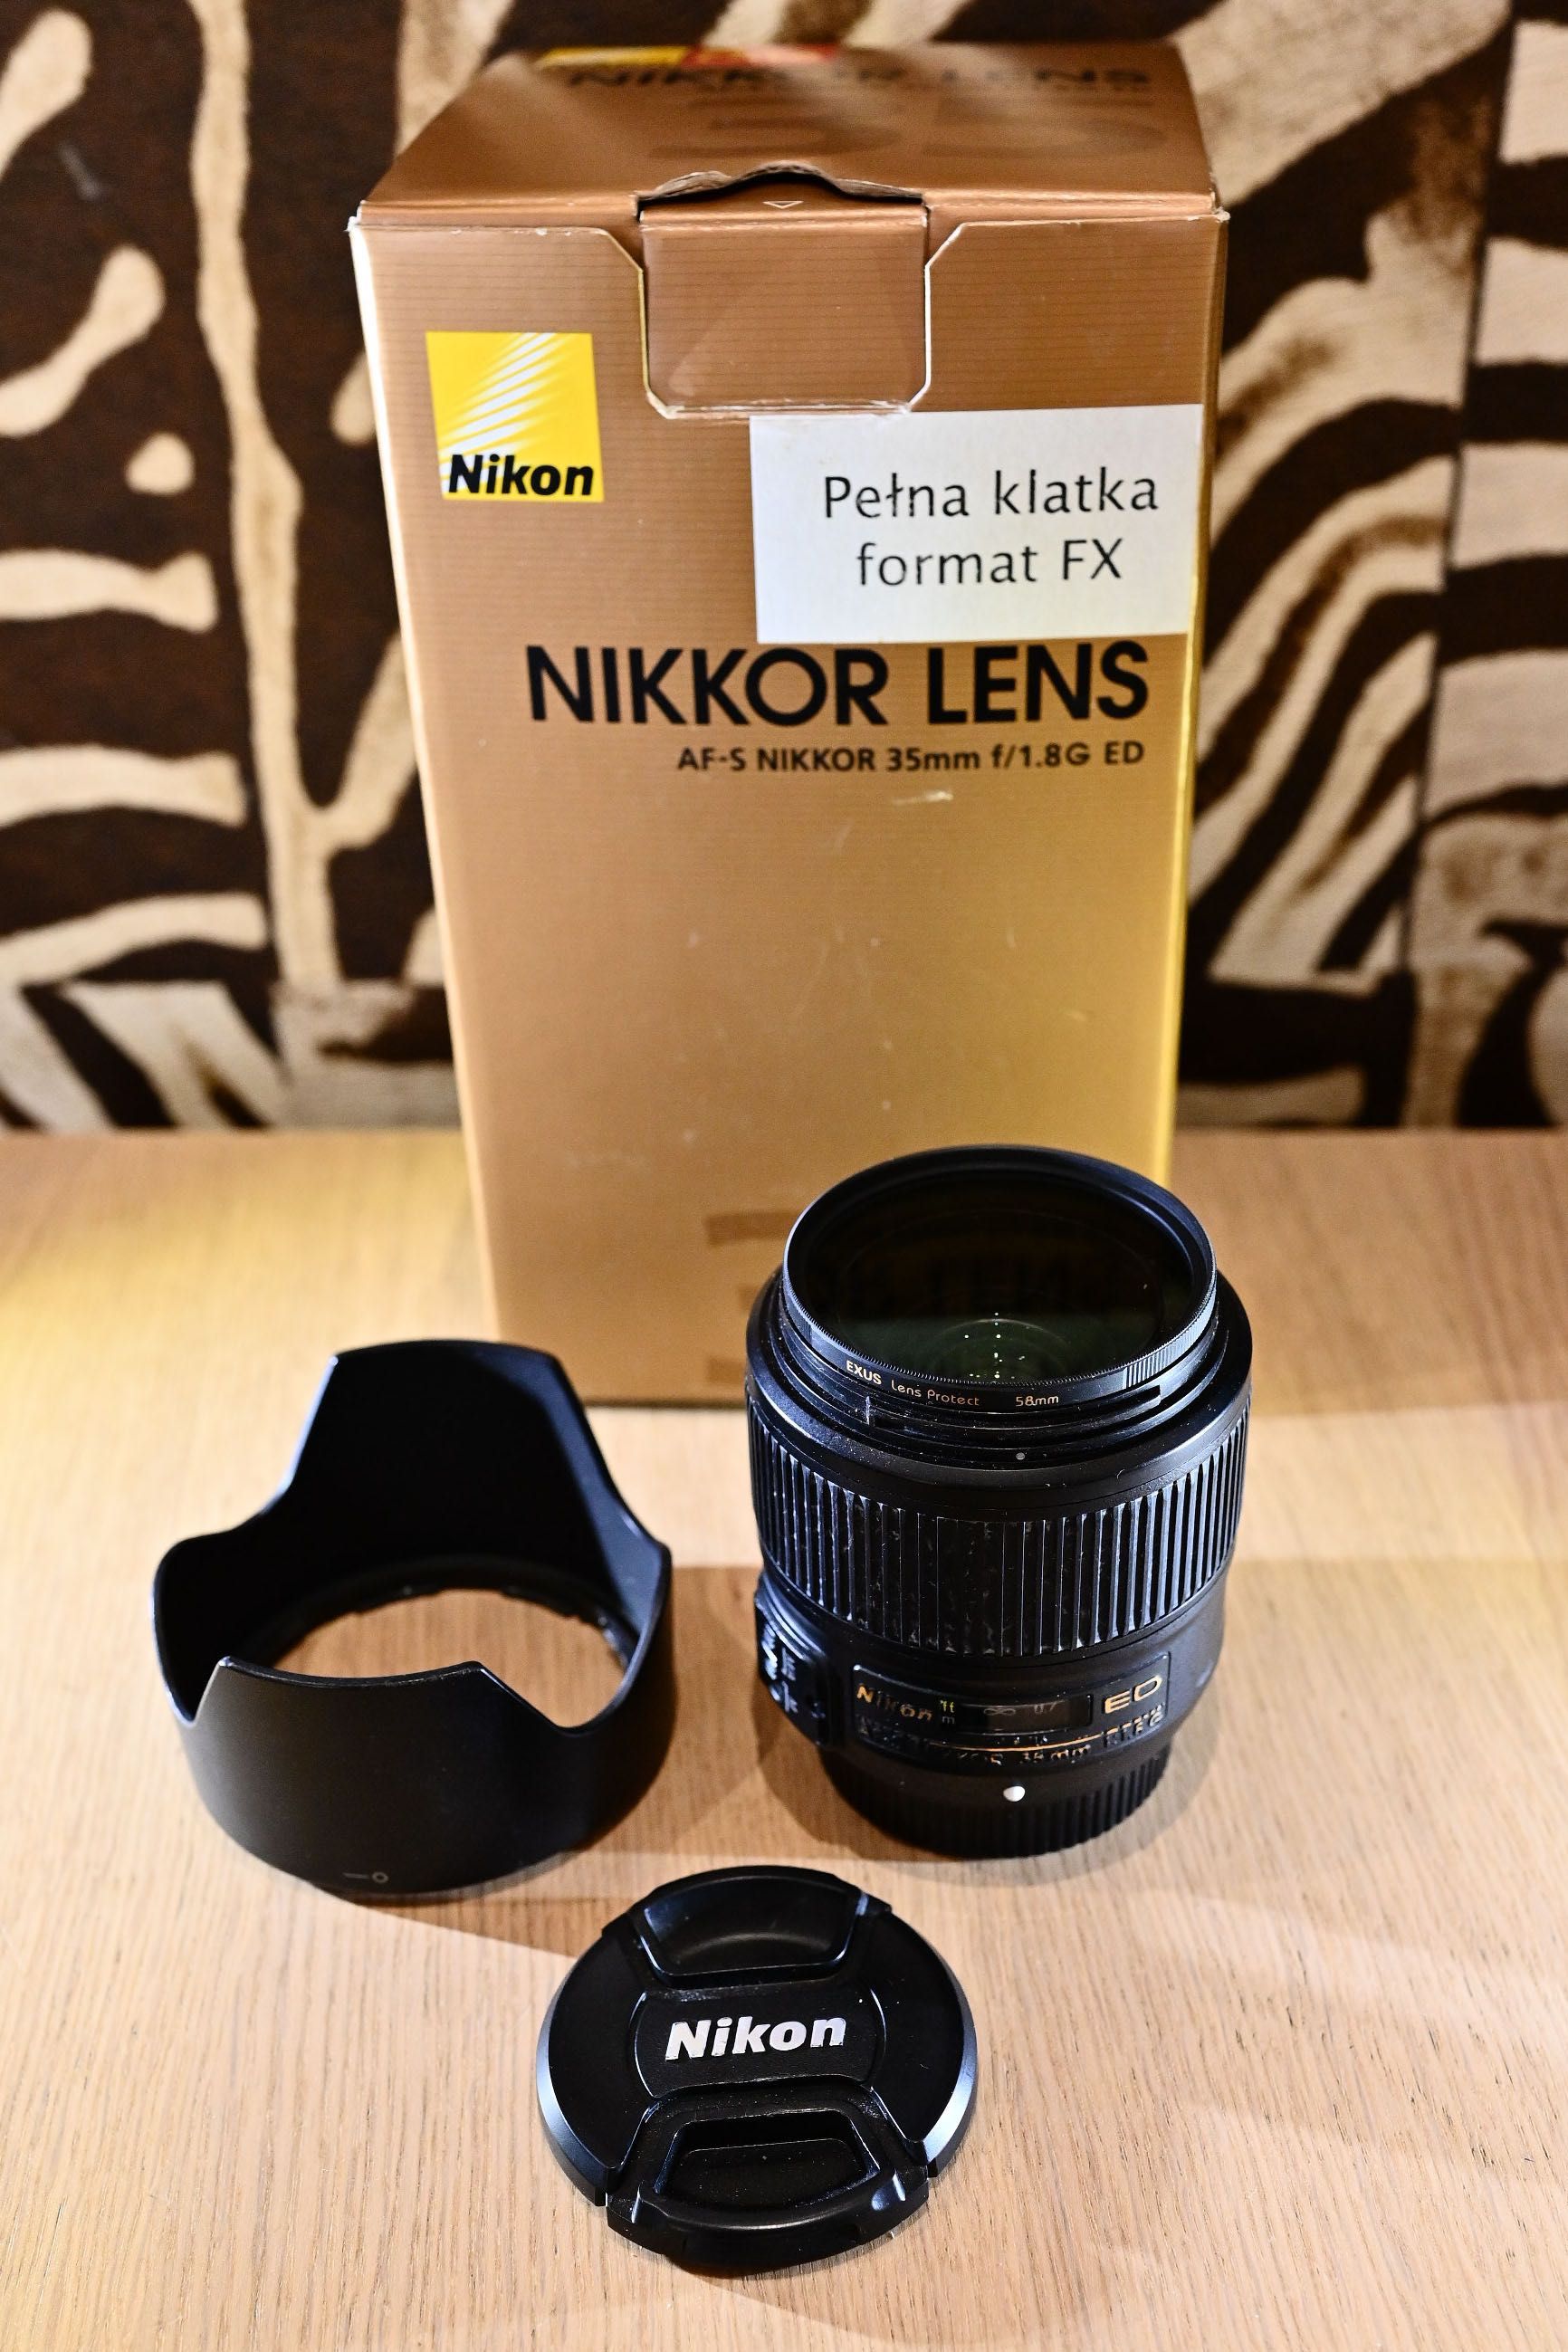 Nikkor 35mm 1.8G AF-S FX-pełna klatka